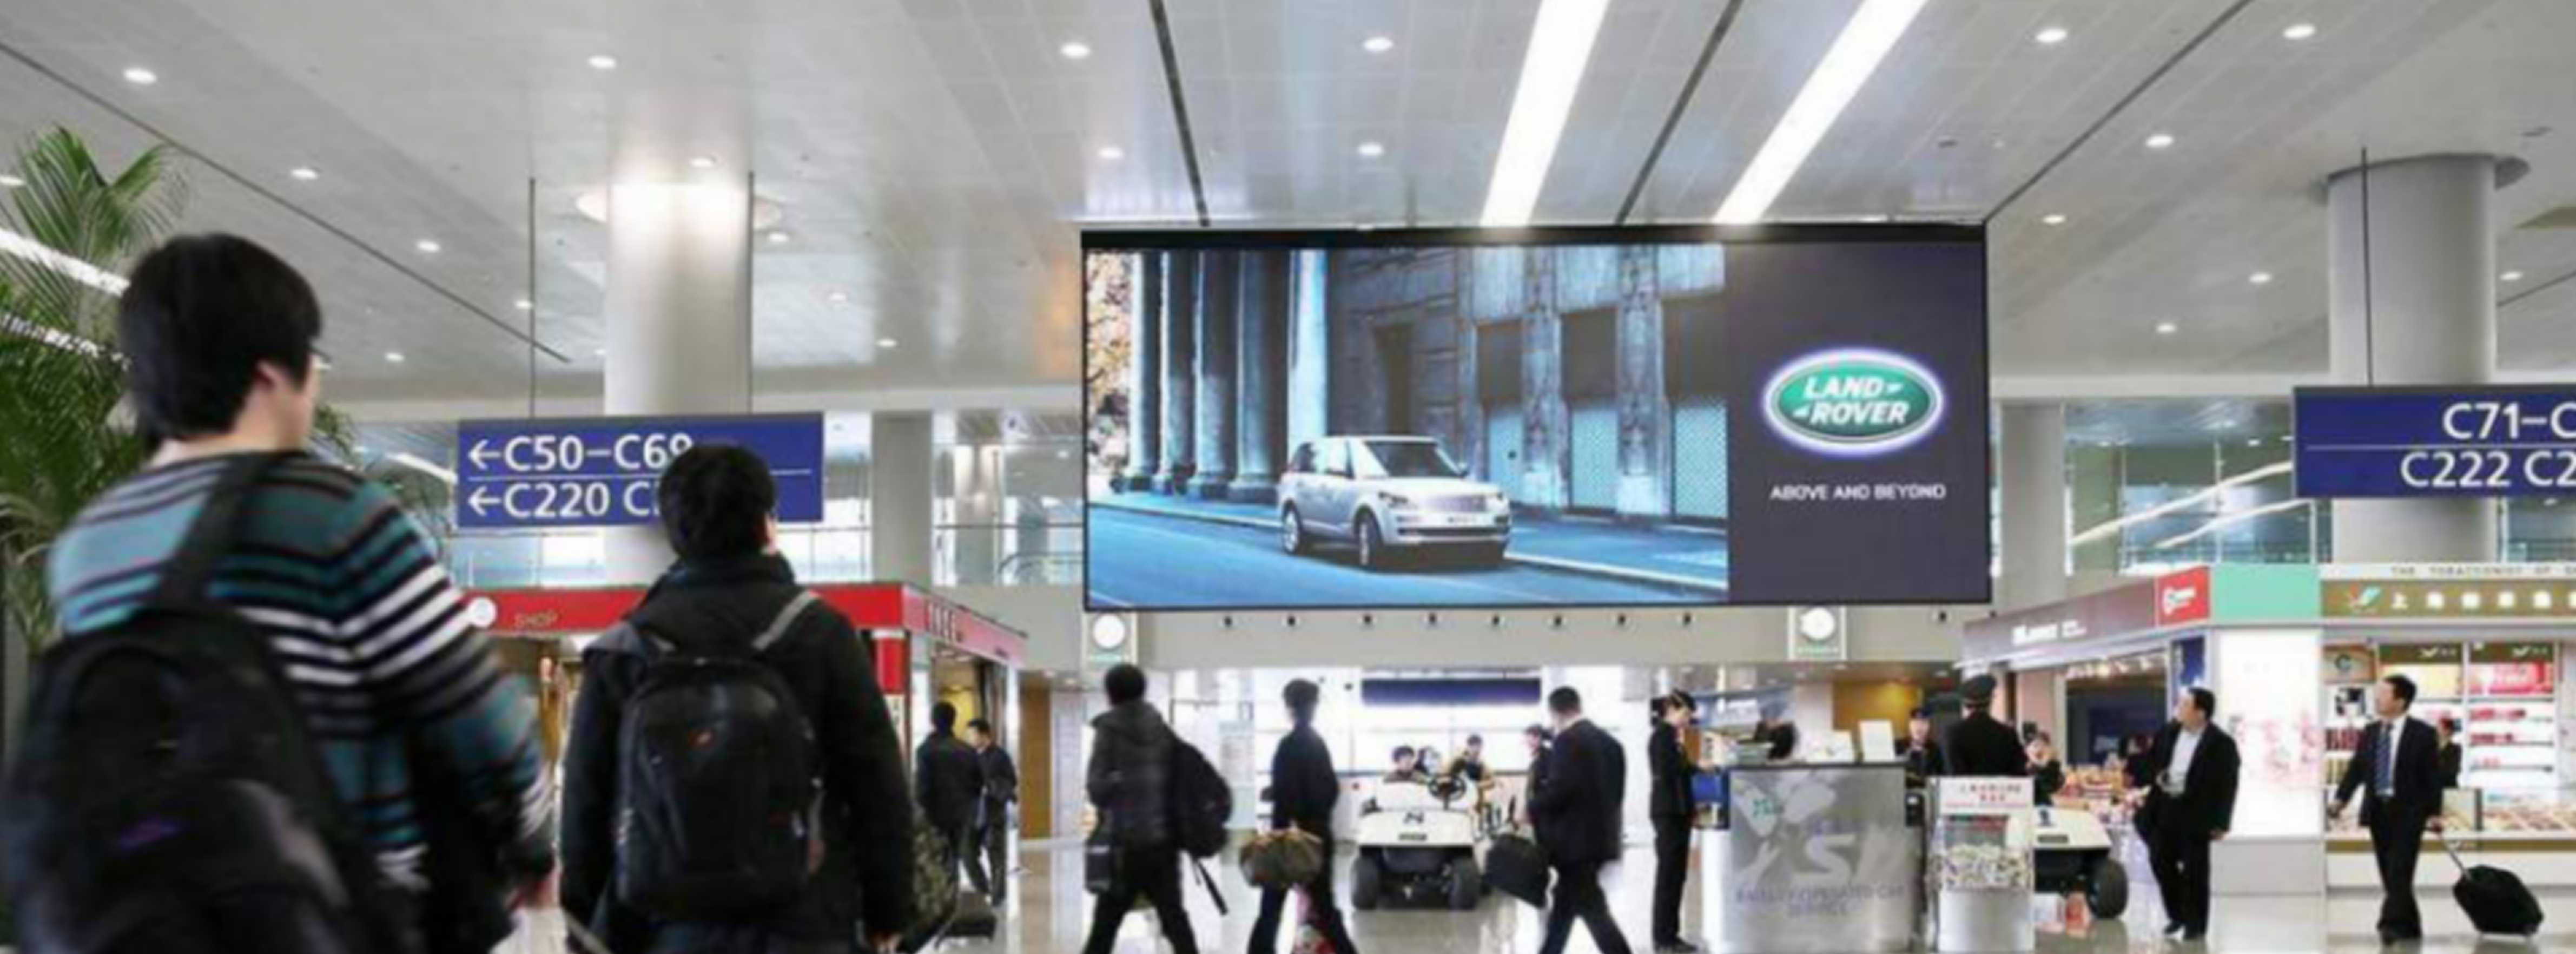 上海机场广告-浦东T2出发候机厅LED屏